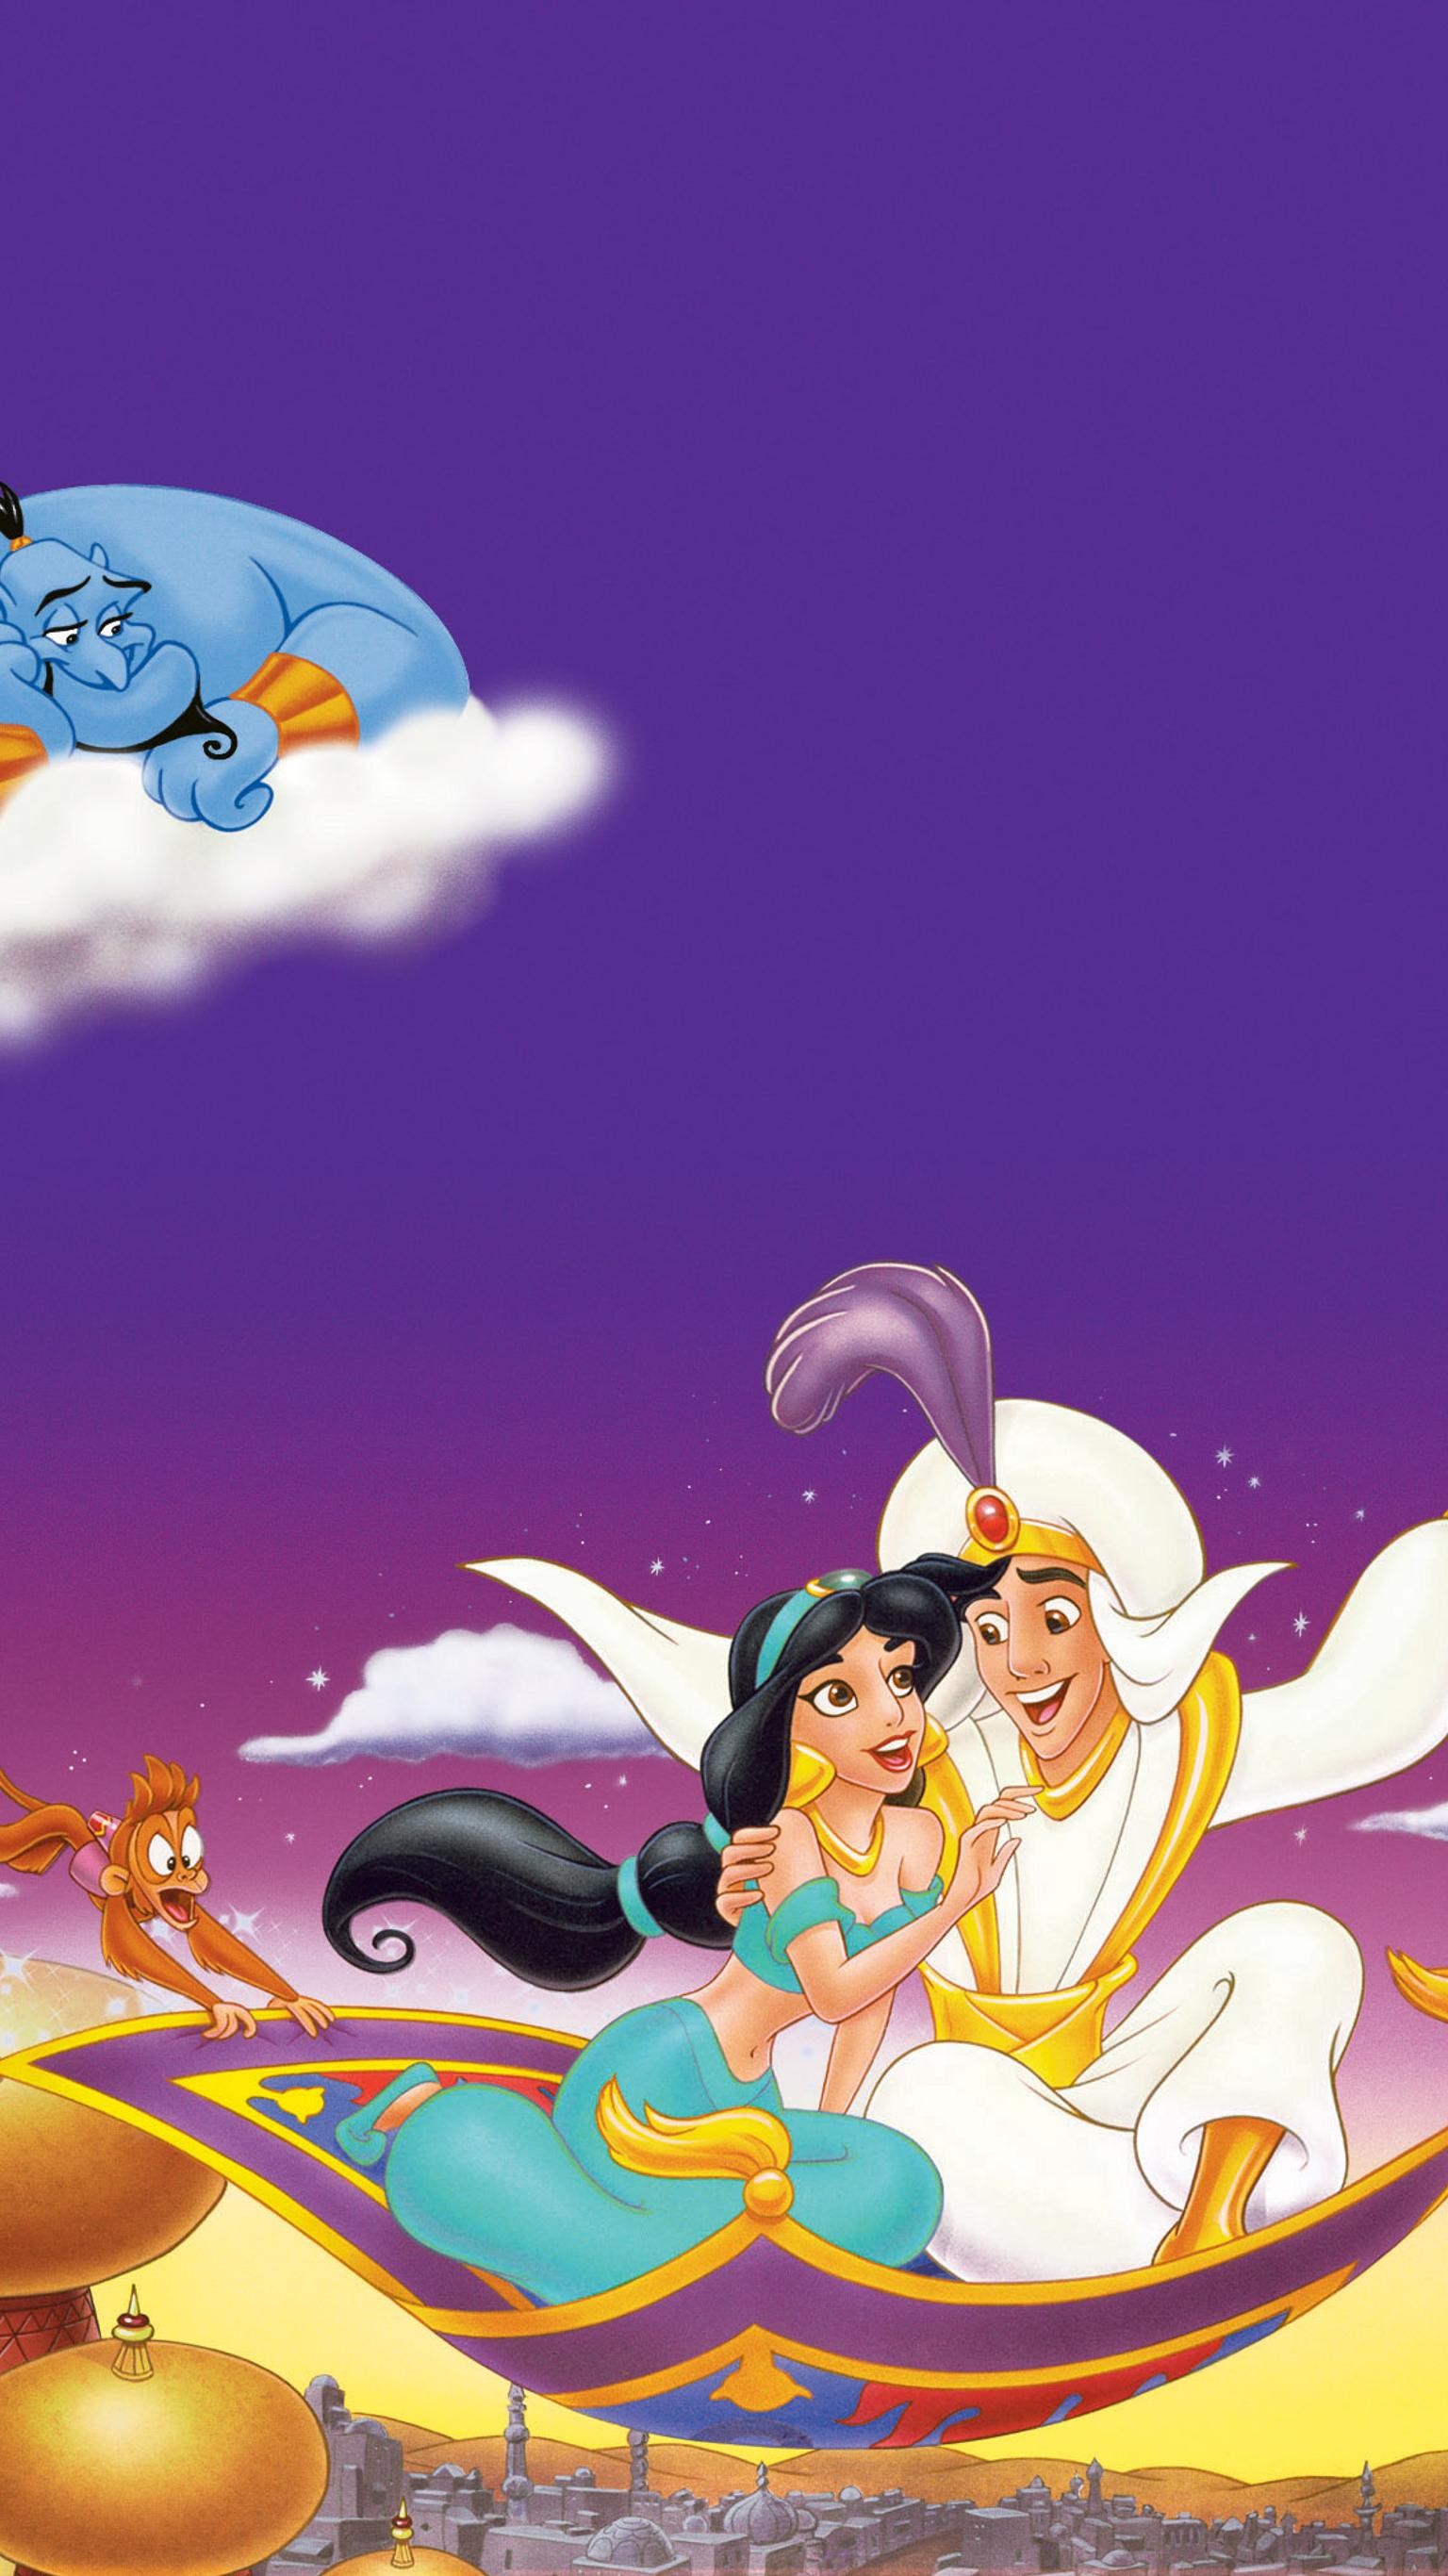 Jasmine from Aladdin Fanart Wallpaper 4k Ultra HD ID:4122